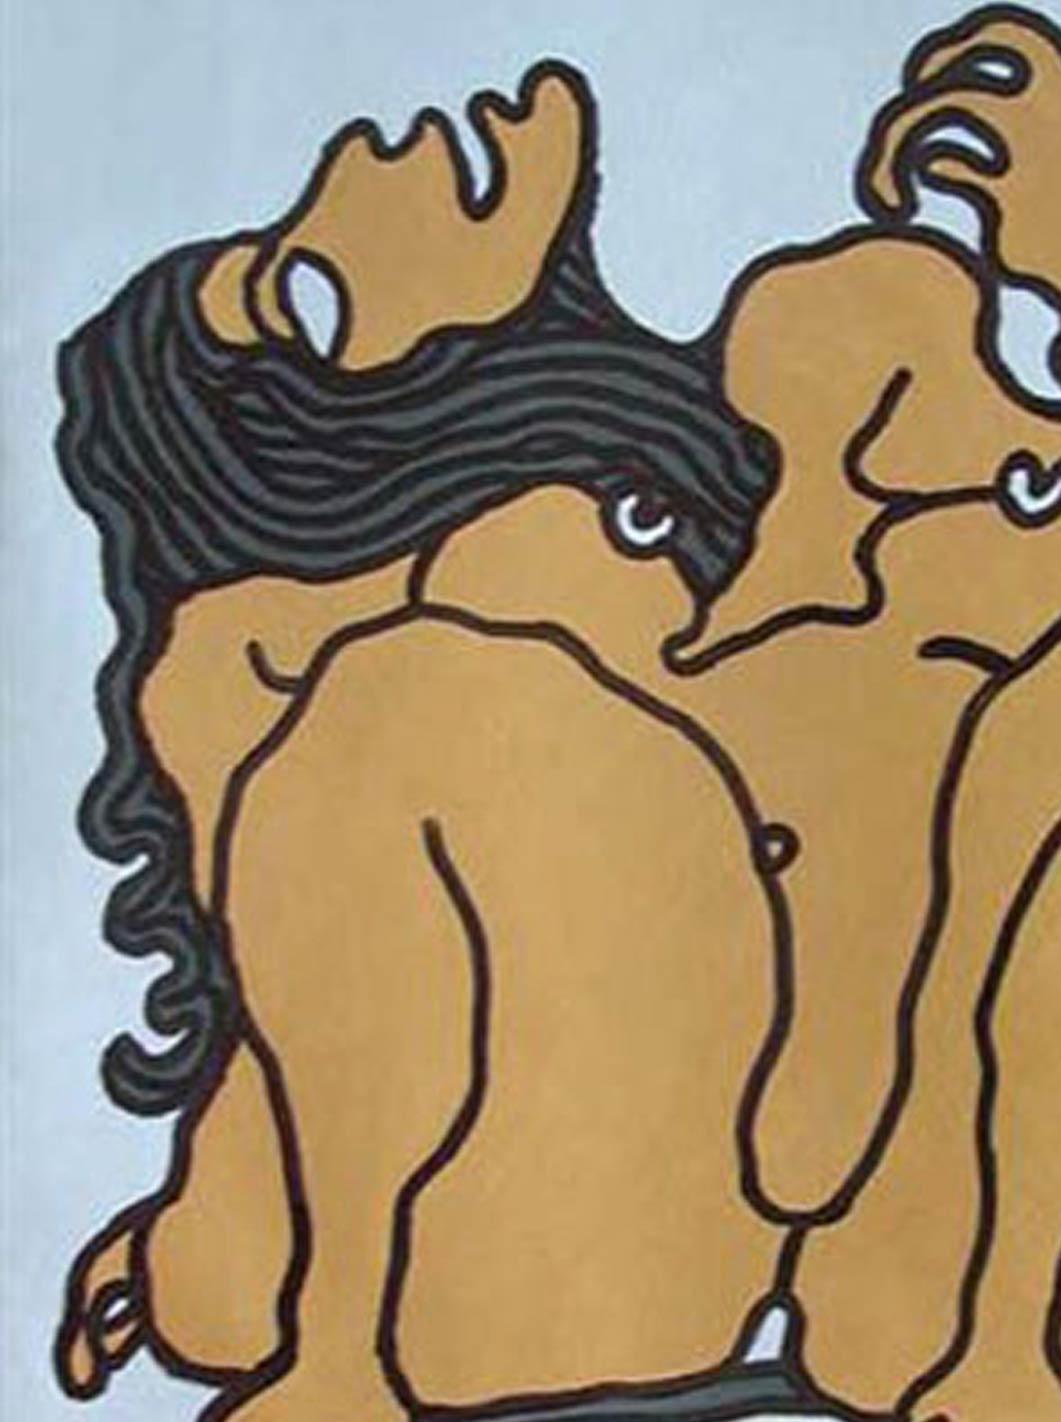 Grandes femmes nues aux yeux larges, cheveux longs, peinture de techniques mixtes, marron vif « en stock » - Painting de Prokash Karmakar